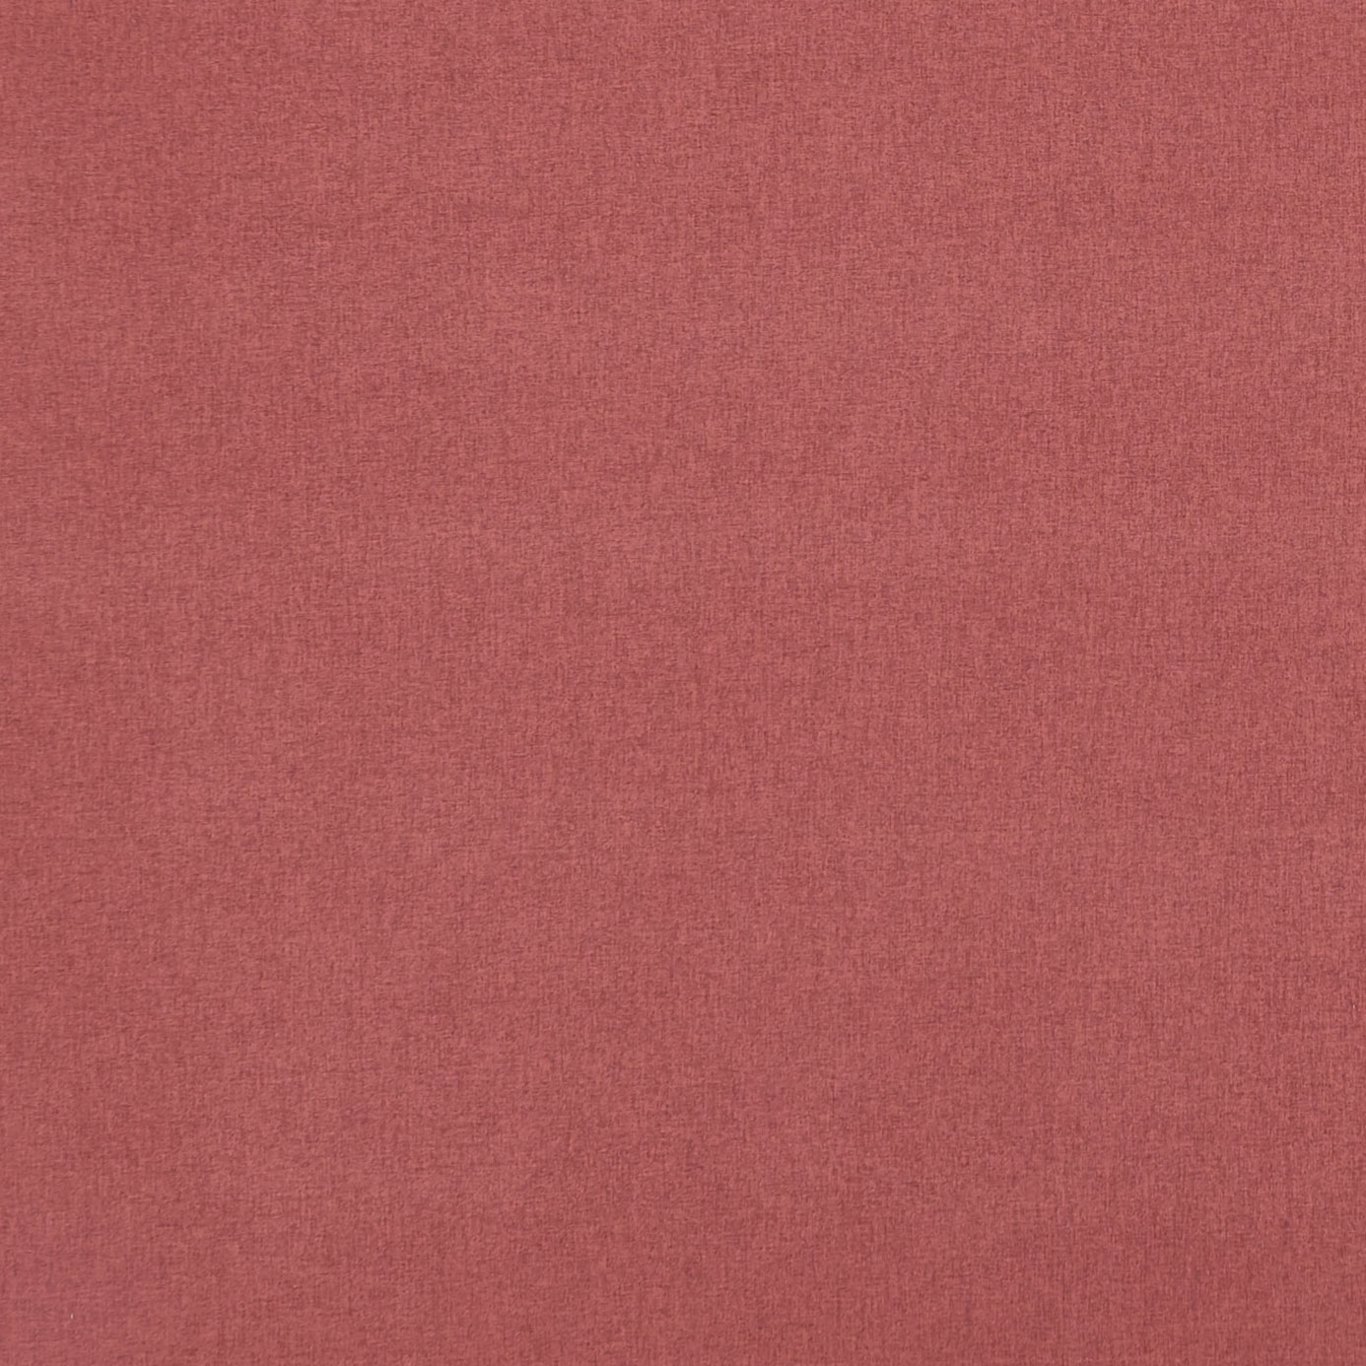 Highlander Garnet Rose Fabric by CNC